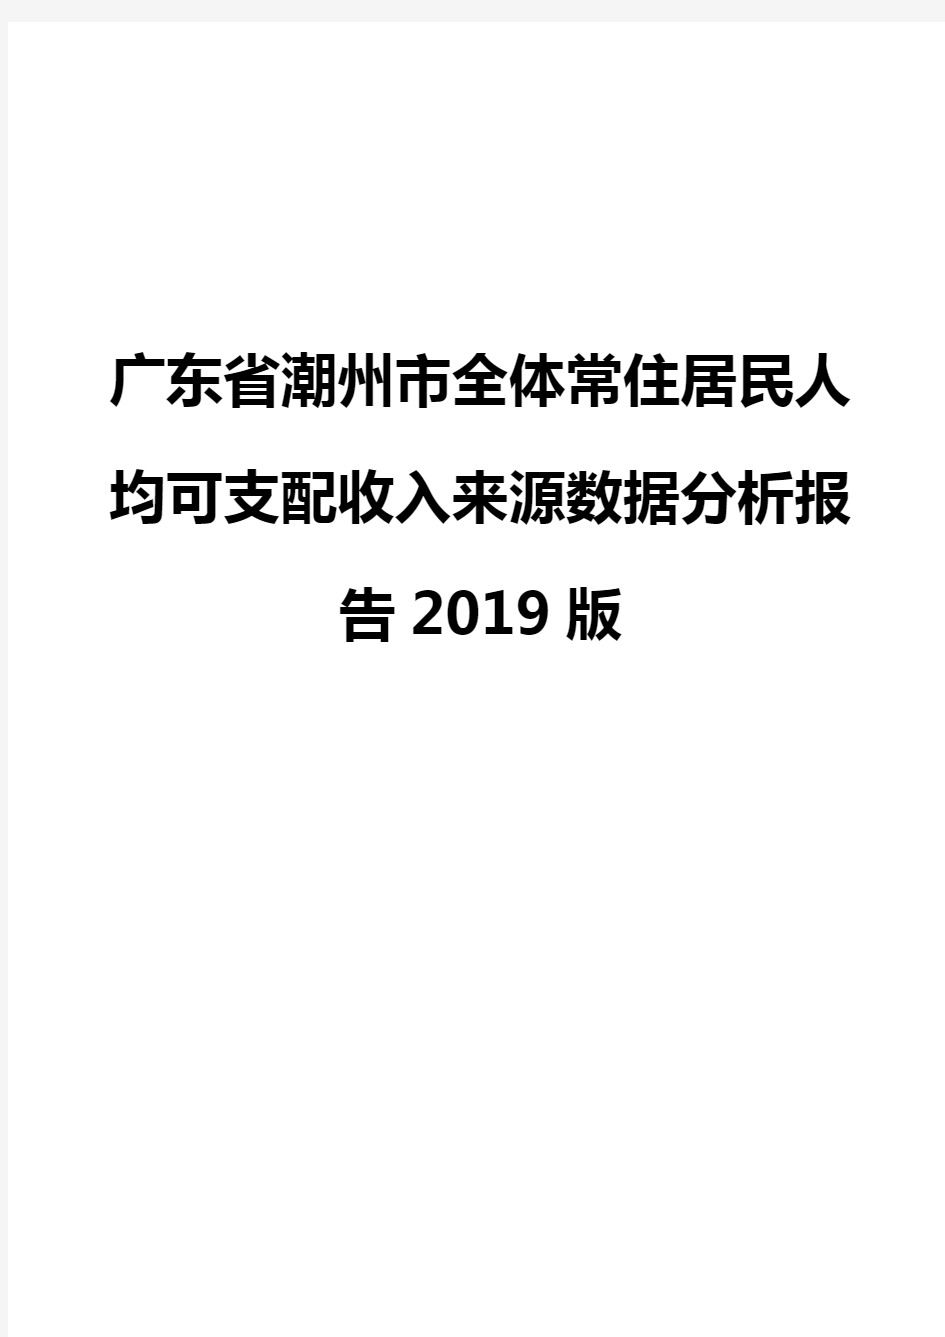 广东省潮州市全体常住居民人均可支配收入来源数据分析报告2019版